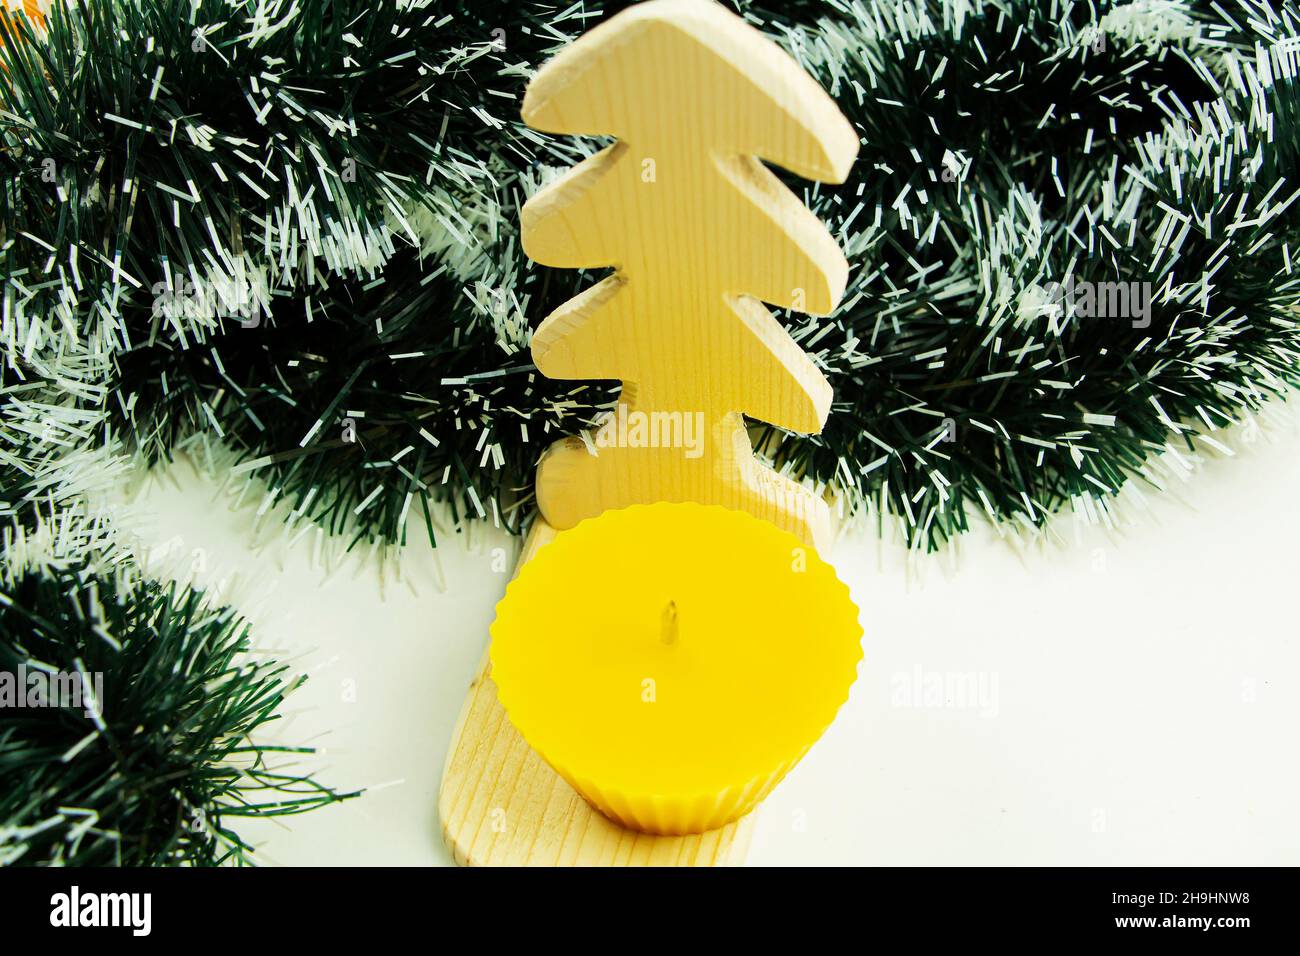 Cadeaux de Noël faits maison, sapin de Noël et bougie en cire naturelle avec décorations. Banque D'Images